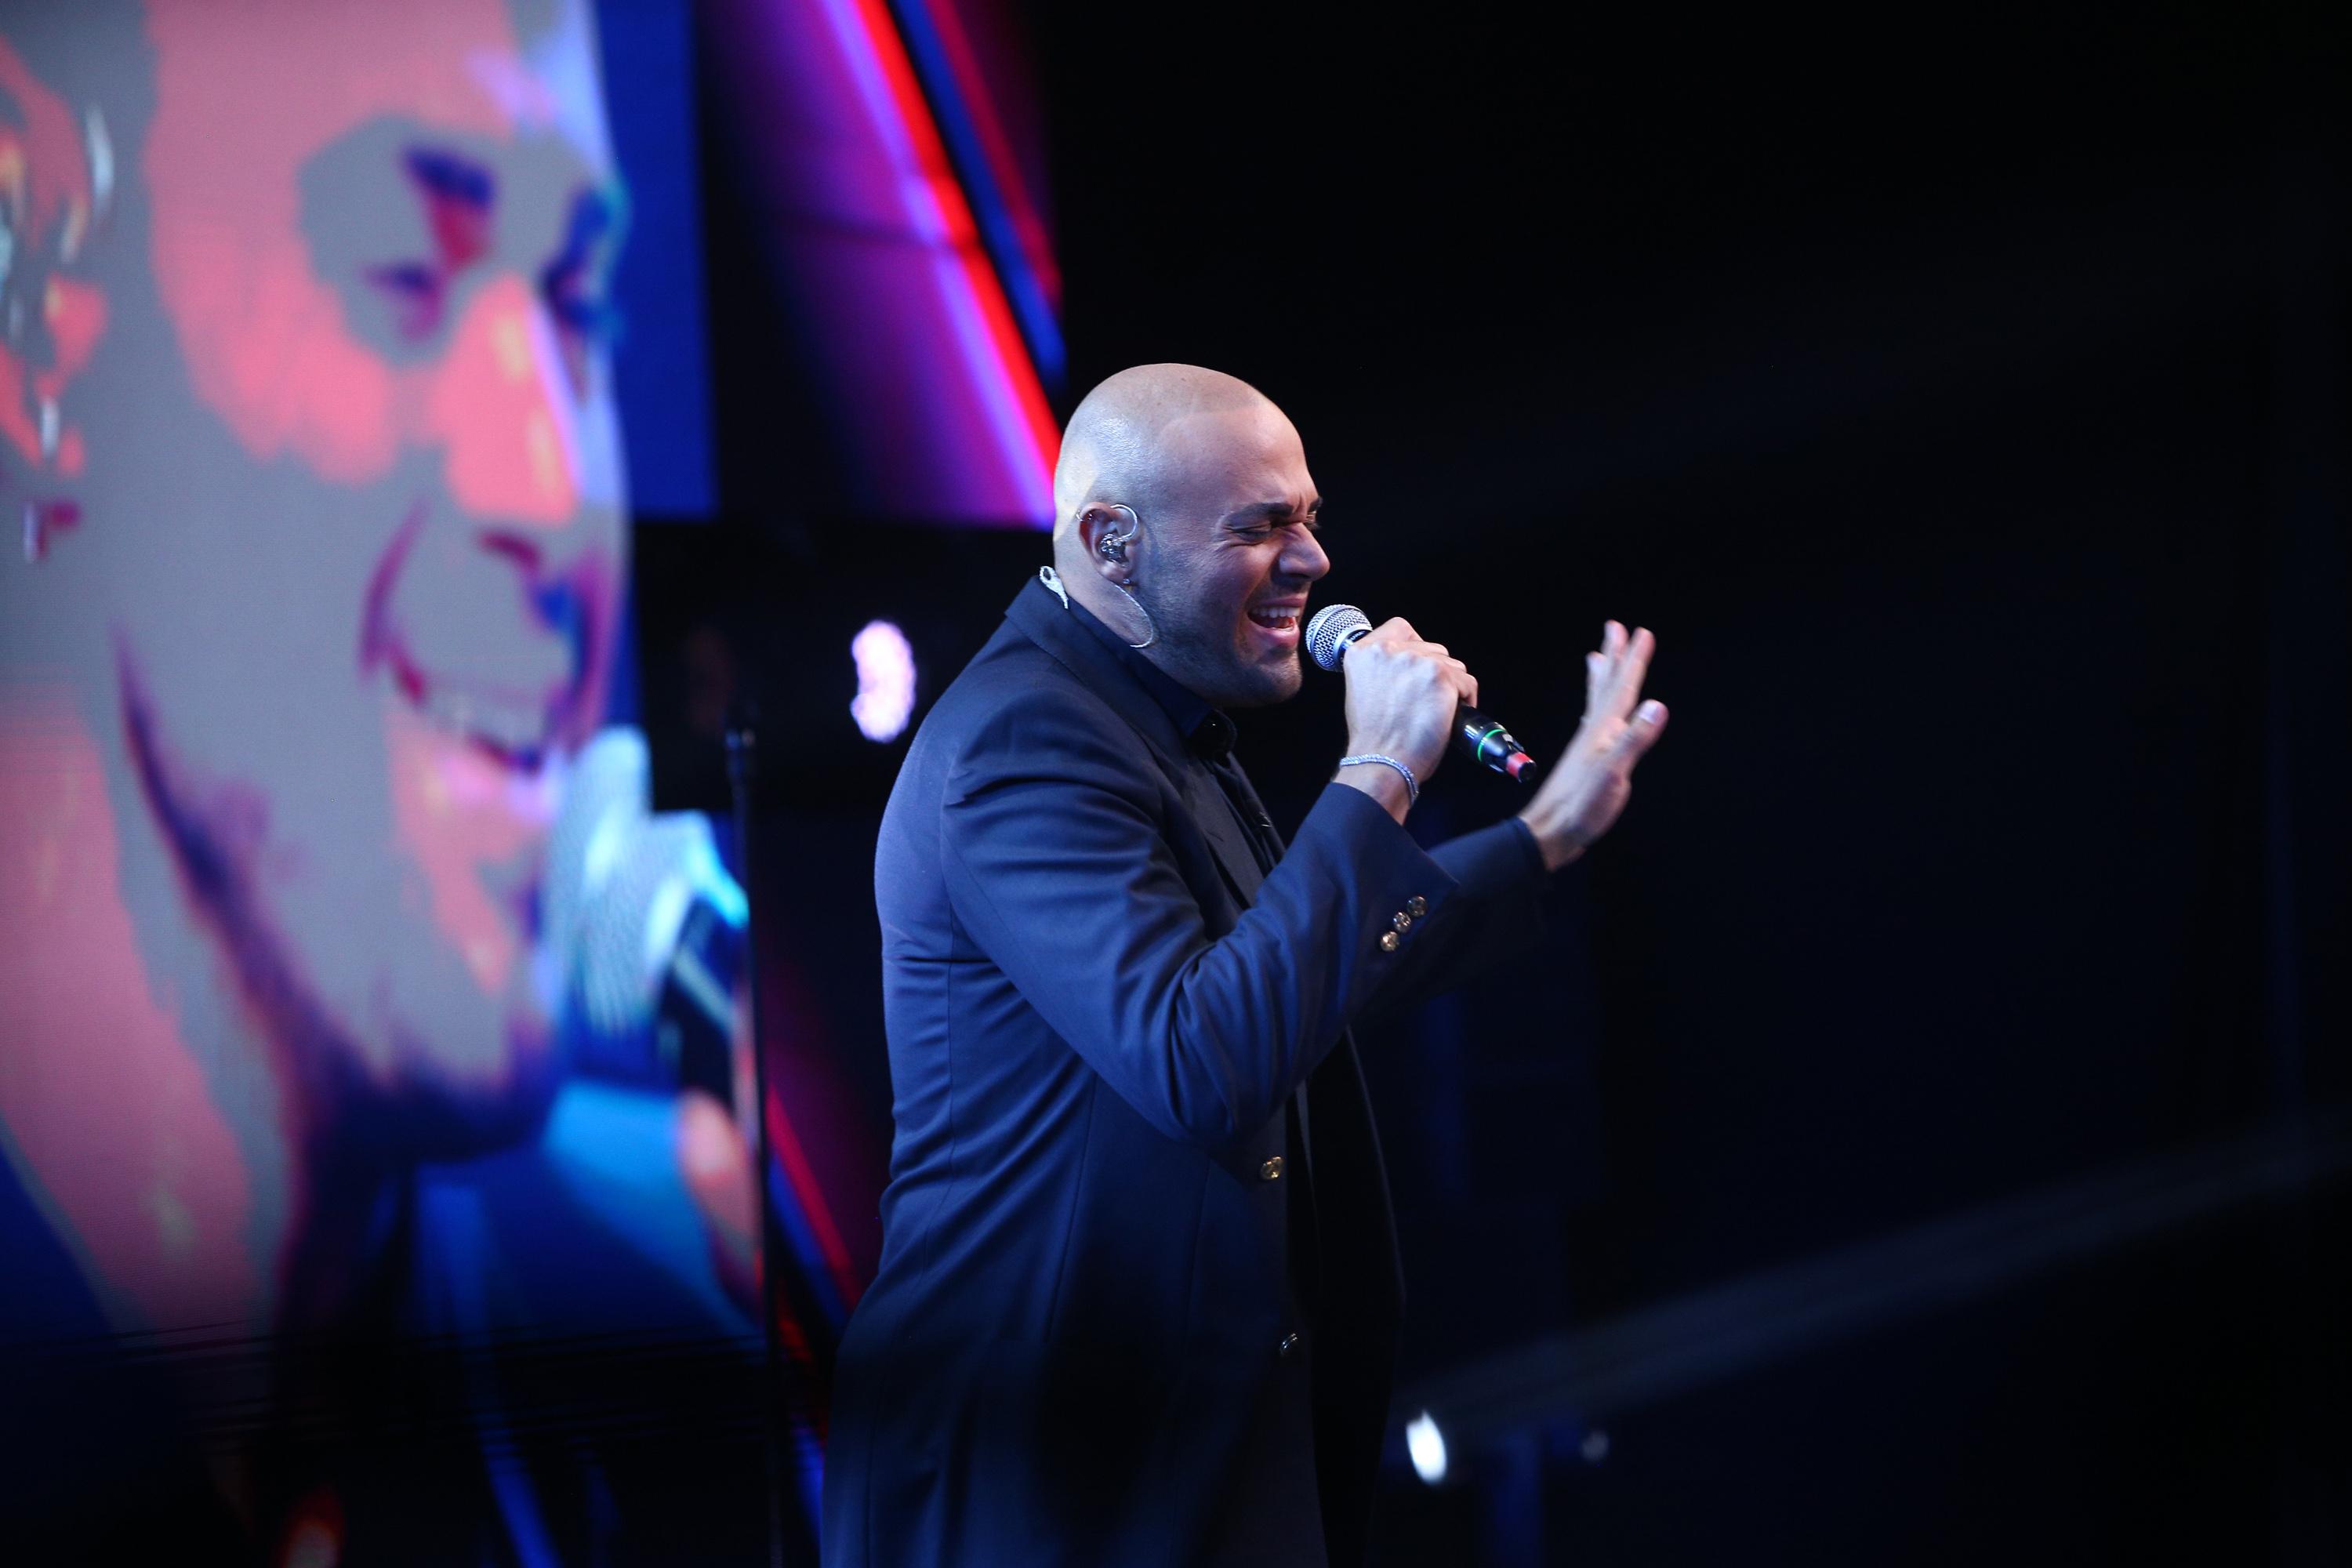 În a zecea ediție din sezonul 9 "X Factor", Mattia Pedretti a cântat piesa "Don't Stop ‘til You Get Enough".